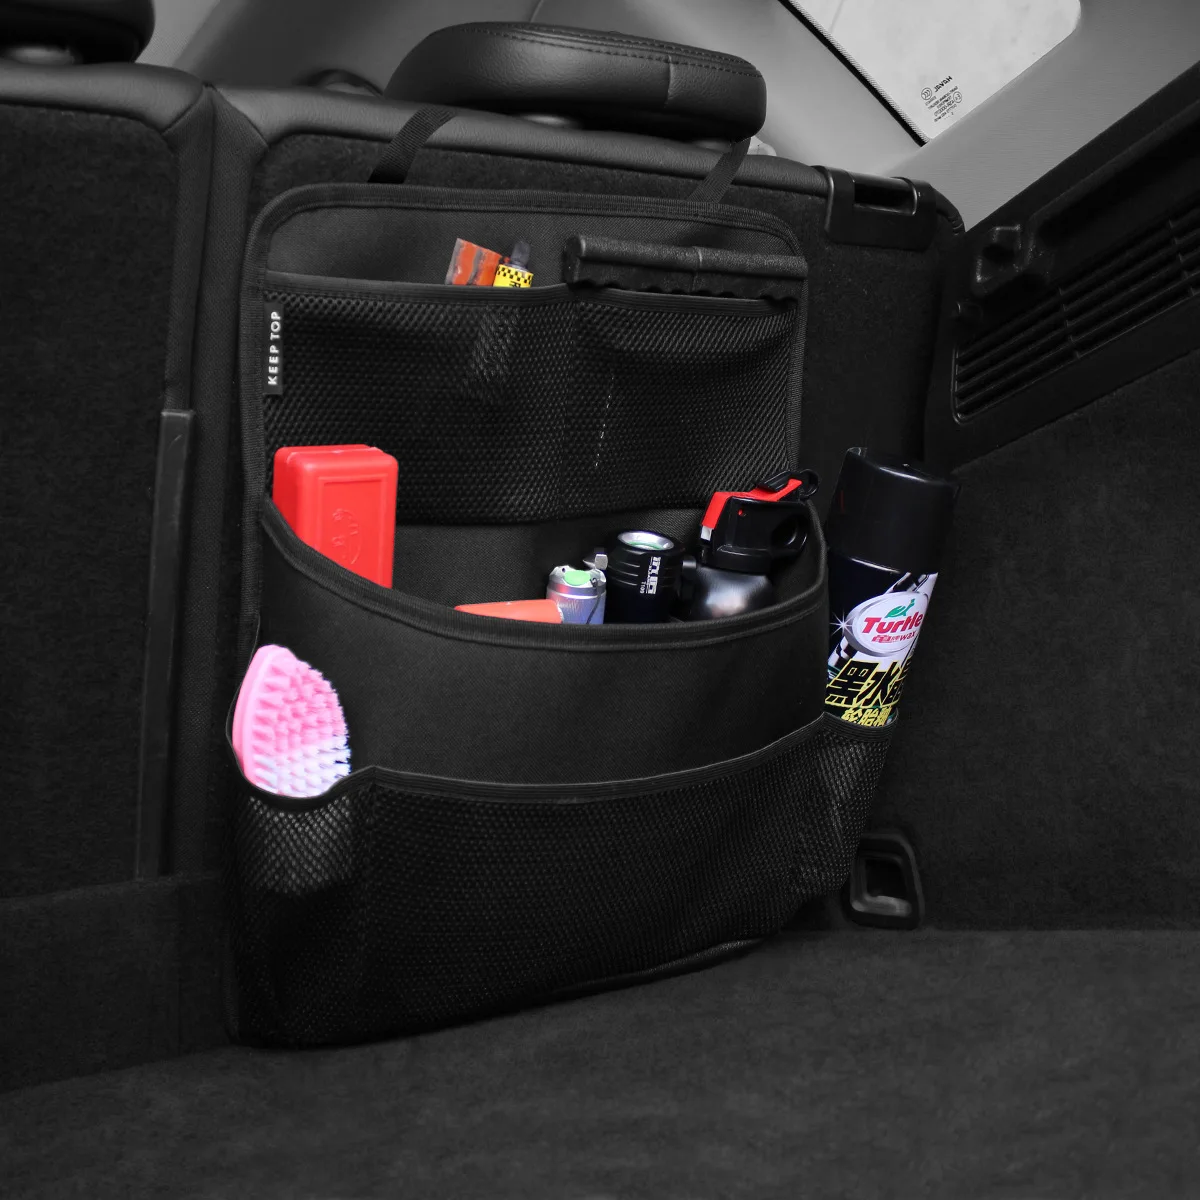 Kofferraum-Organizer verstellbare Rücksitz-Aufbewahrung tasche Netz  Hochleistungs-Mehrzweck-Oxford-Auto-Rückenlehnen organisatoren Universal -  AliExpress